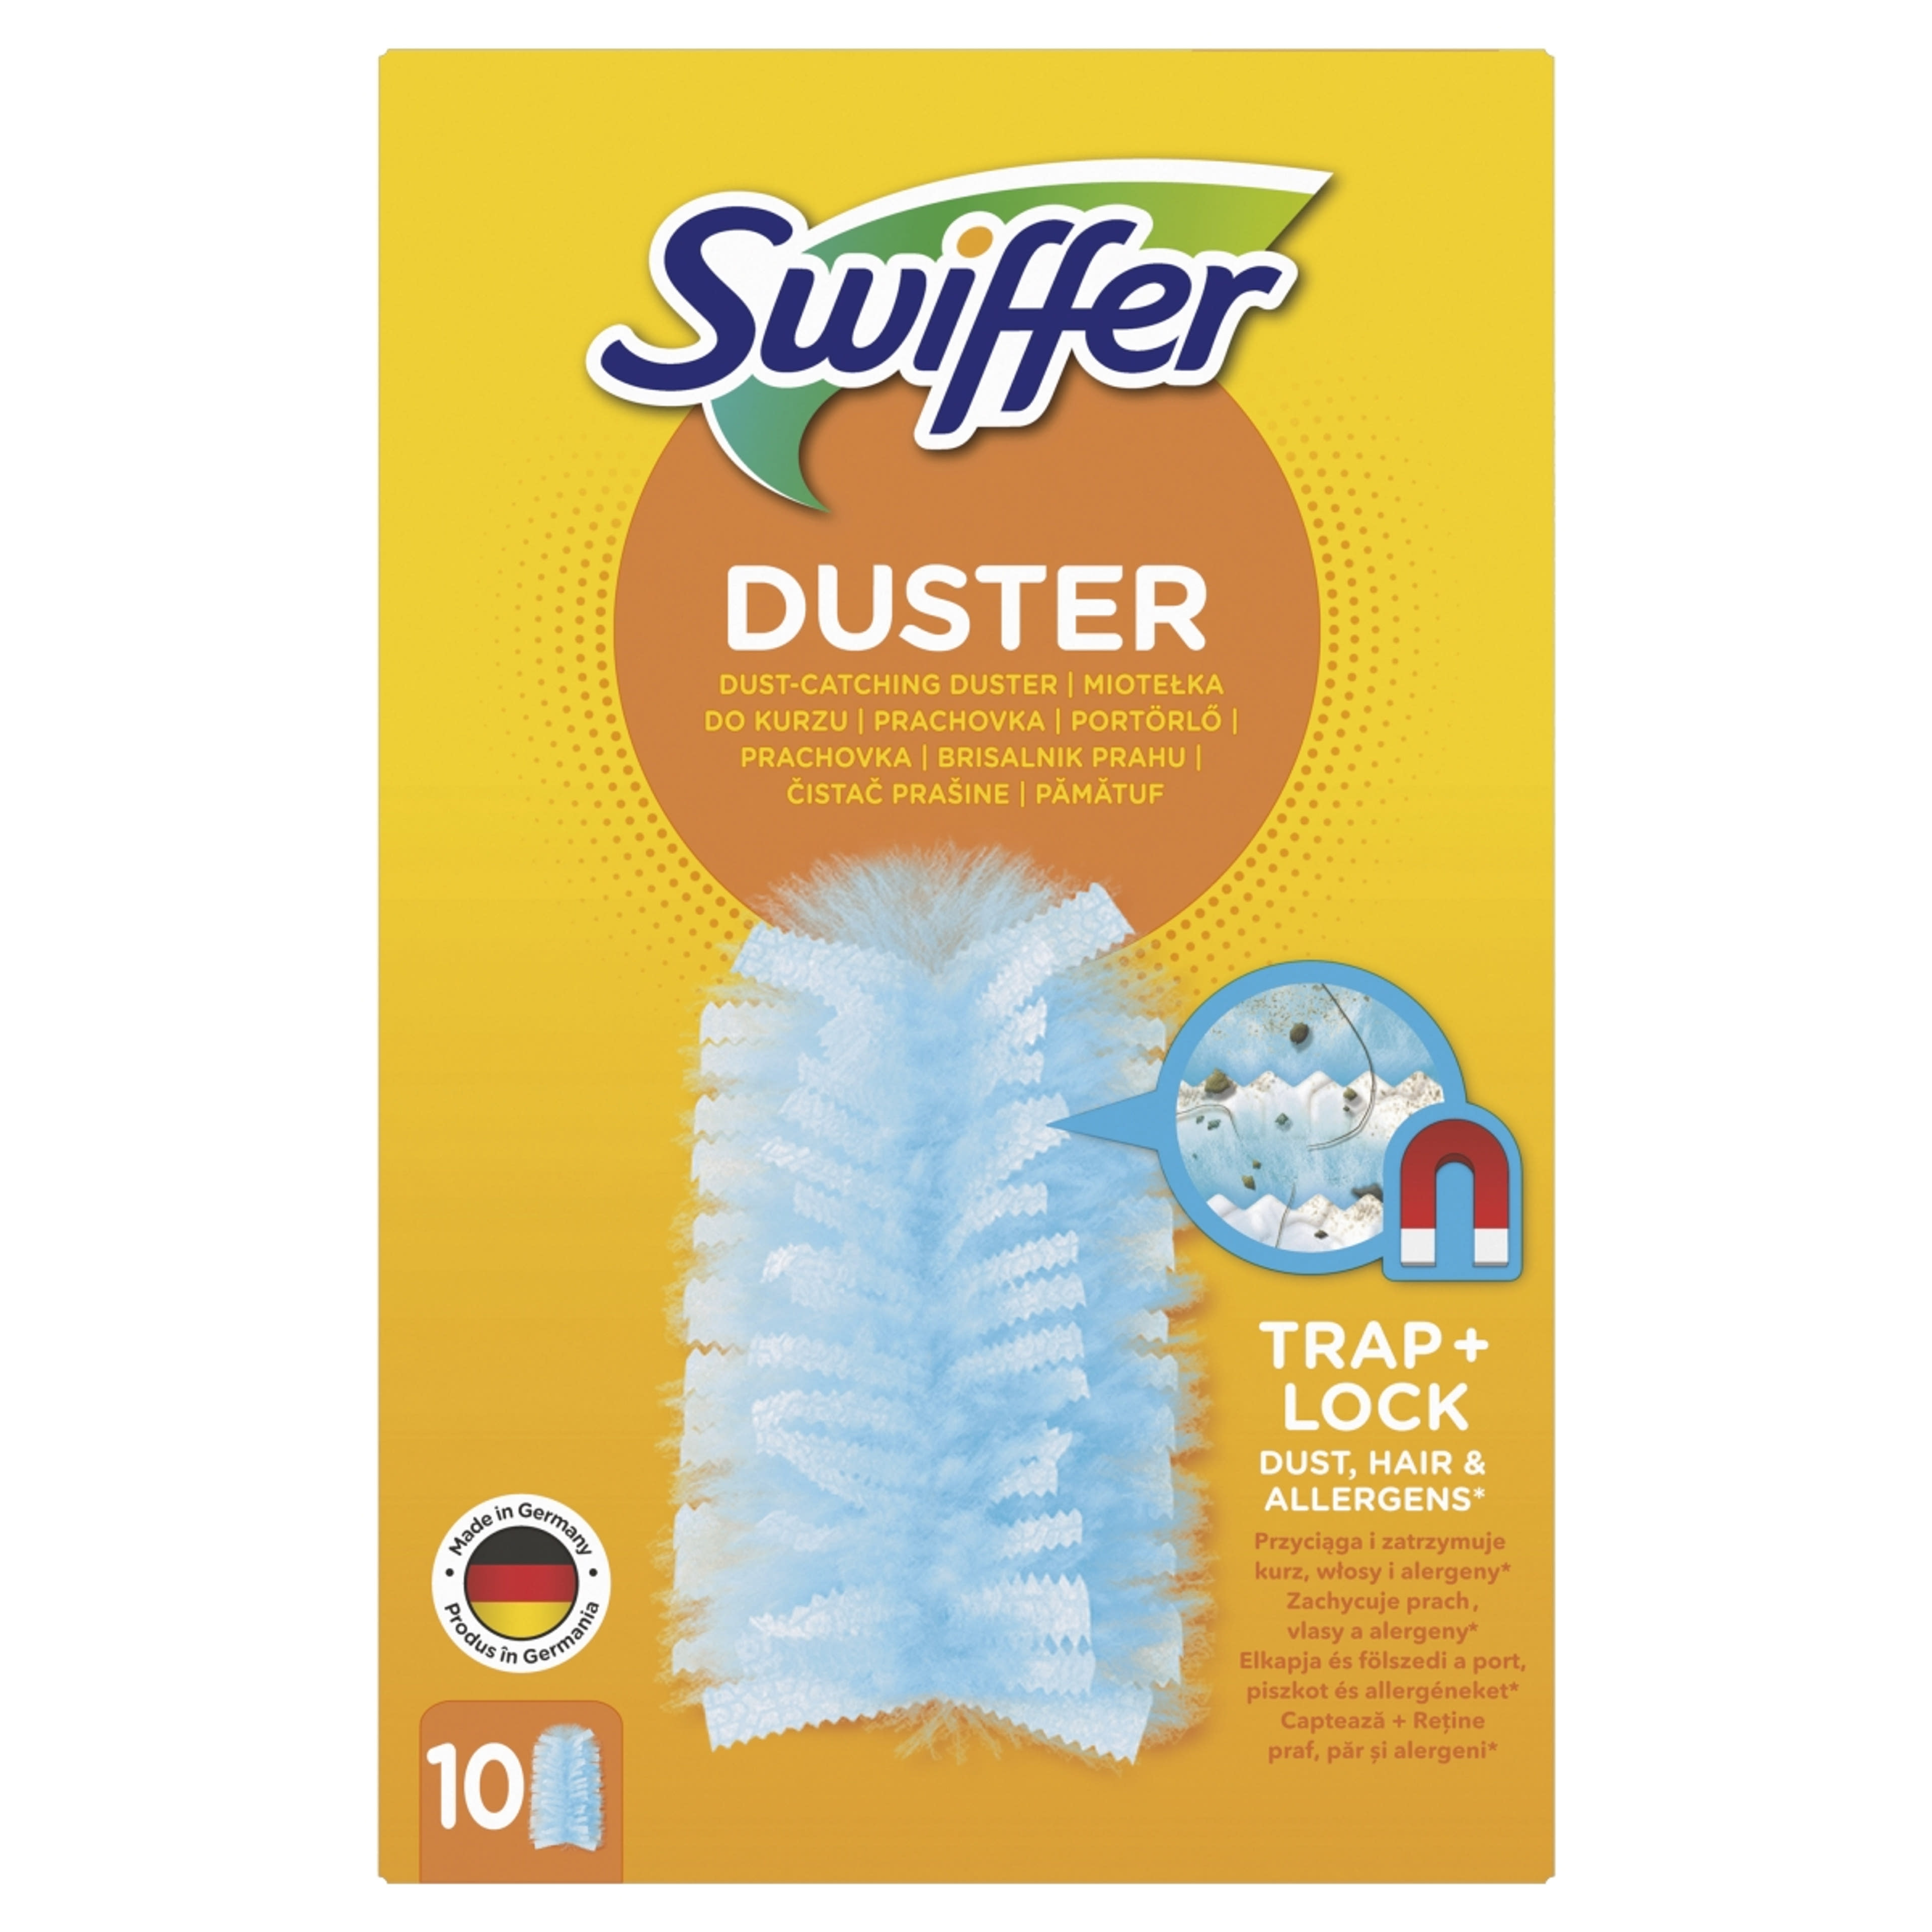 Swiffer Duster utántöltő - 10 db